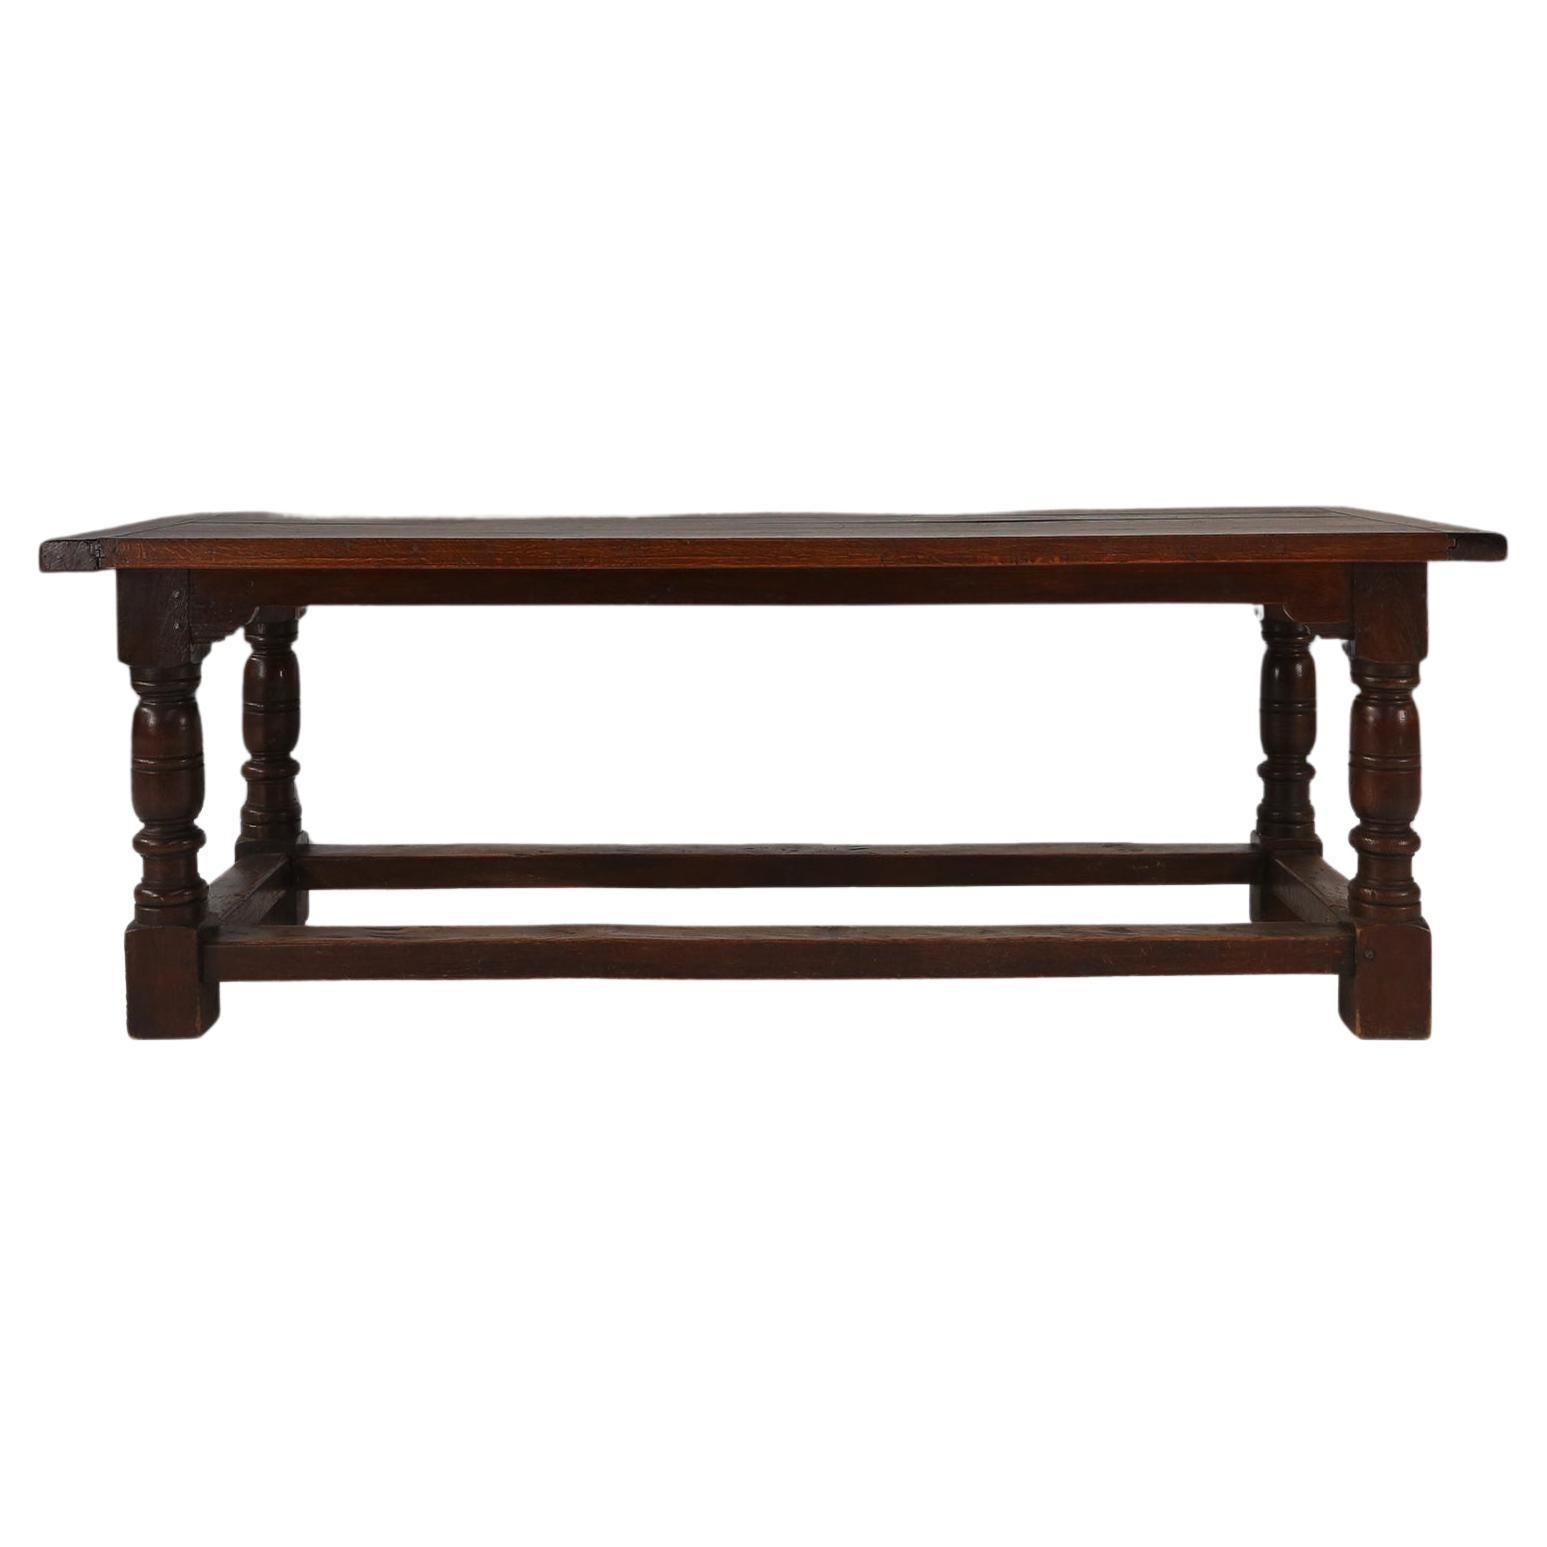 Dieser französische antike, rustikale Tisch aus dunkler Eiche ist die perfekte Ergänzung für jeden modernen Wohnraum oder Einrichtungsstil. Dieser mit Präzision und Liebe zum Detail gefertigte Tisch verbindet Funktionalität mit zeitloser Schönheit.